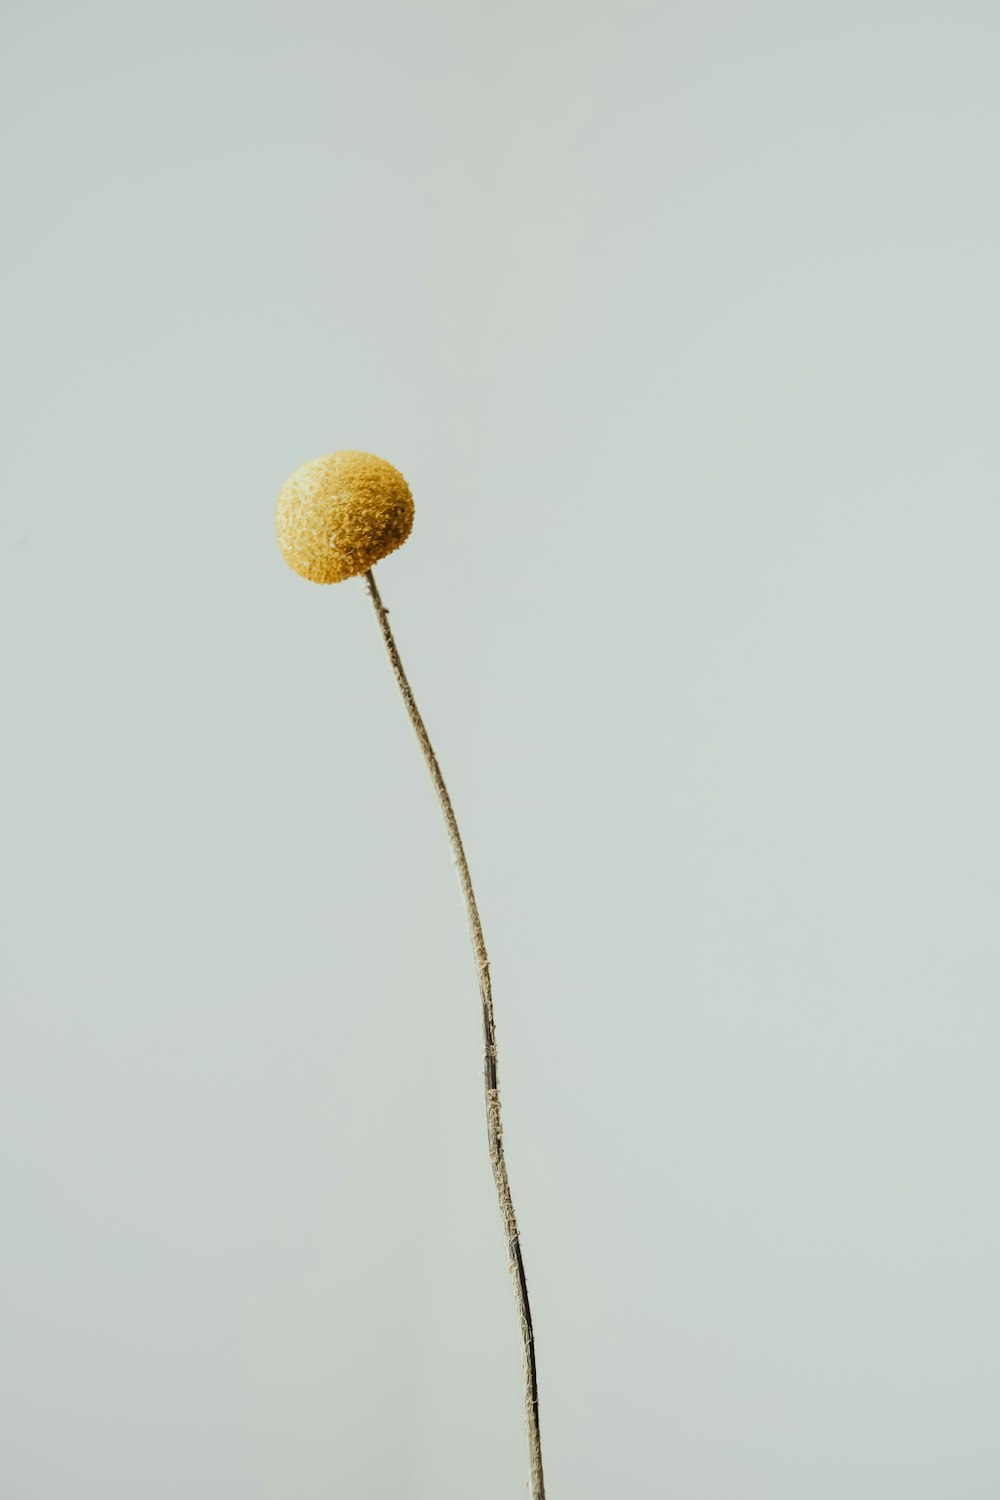 una planta con una bola amarilla encima